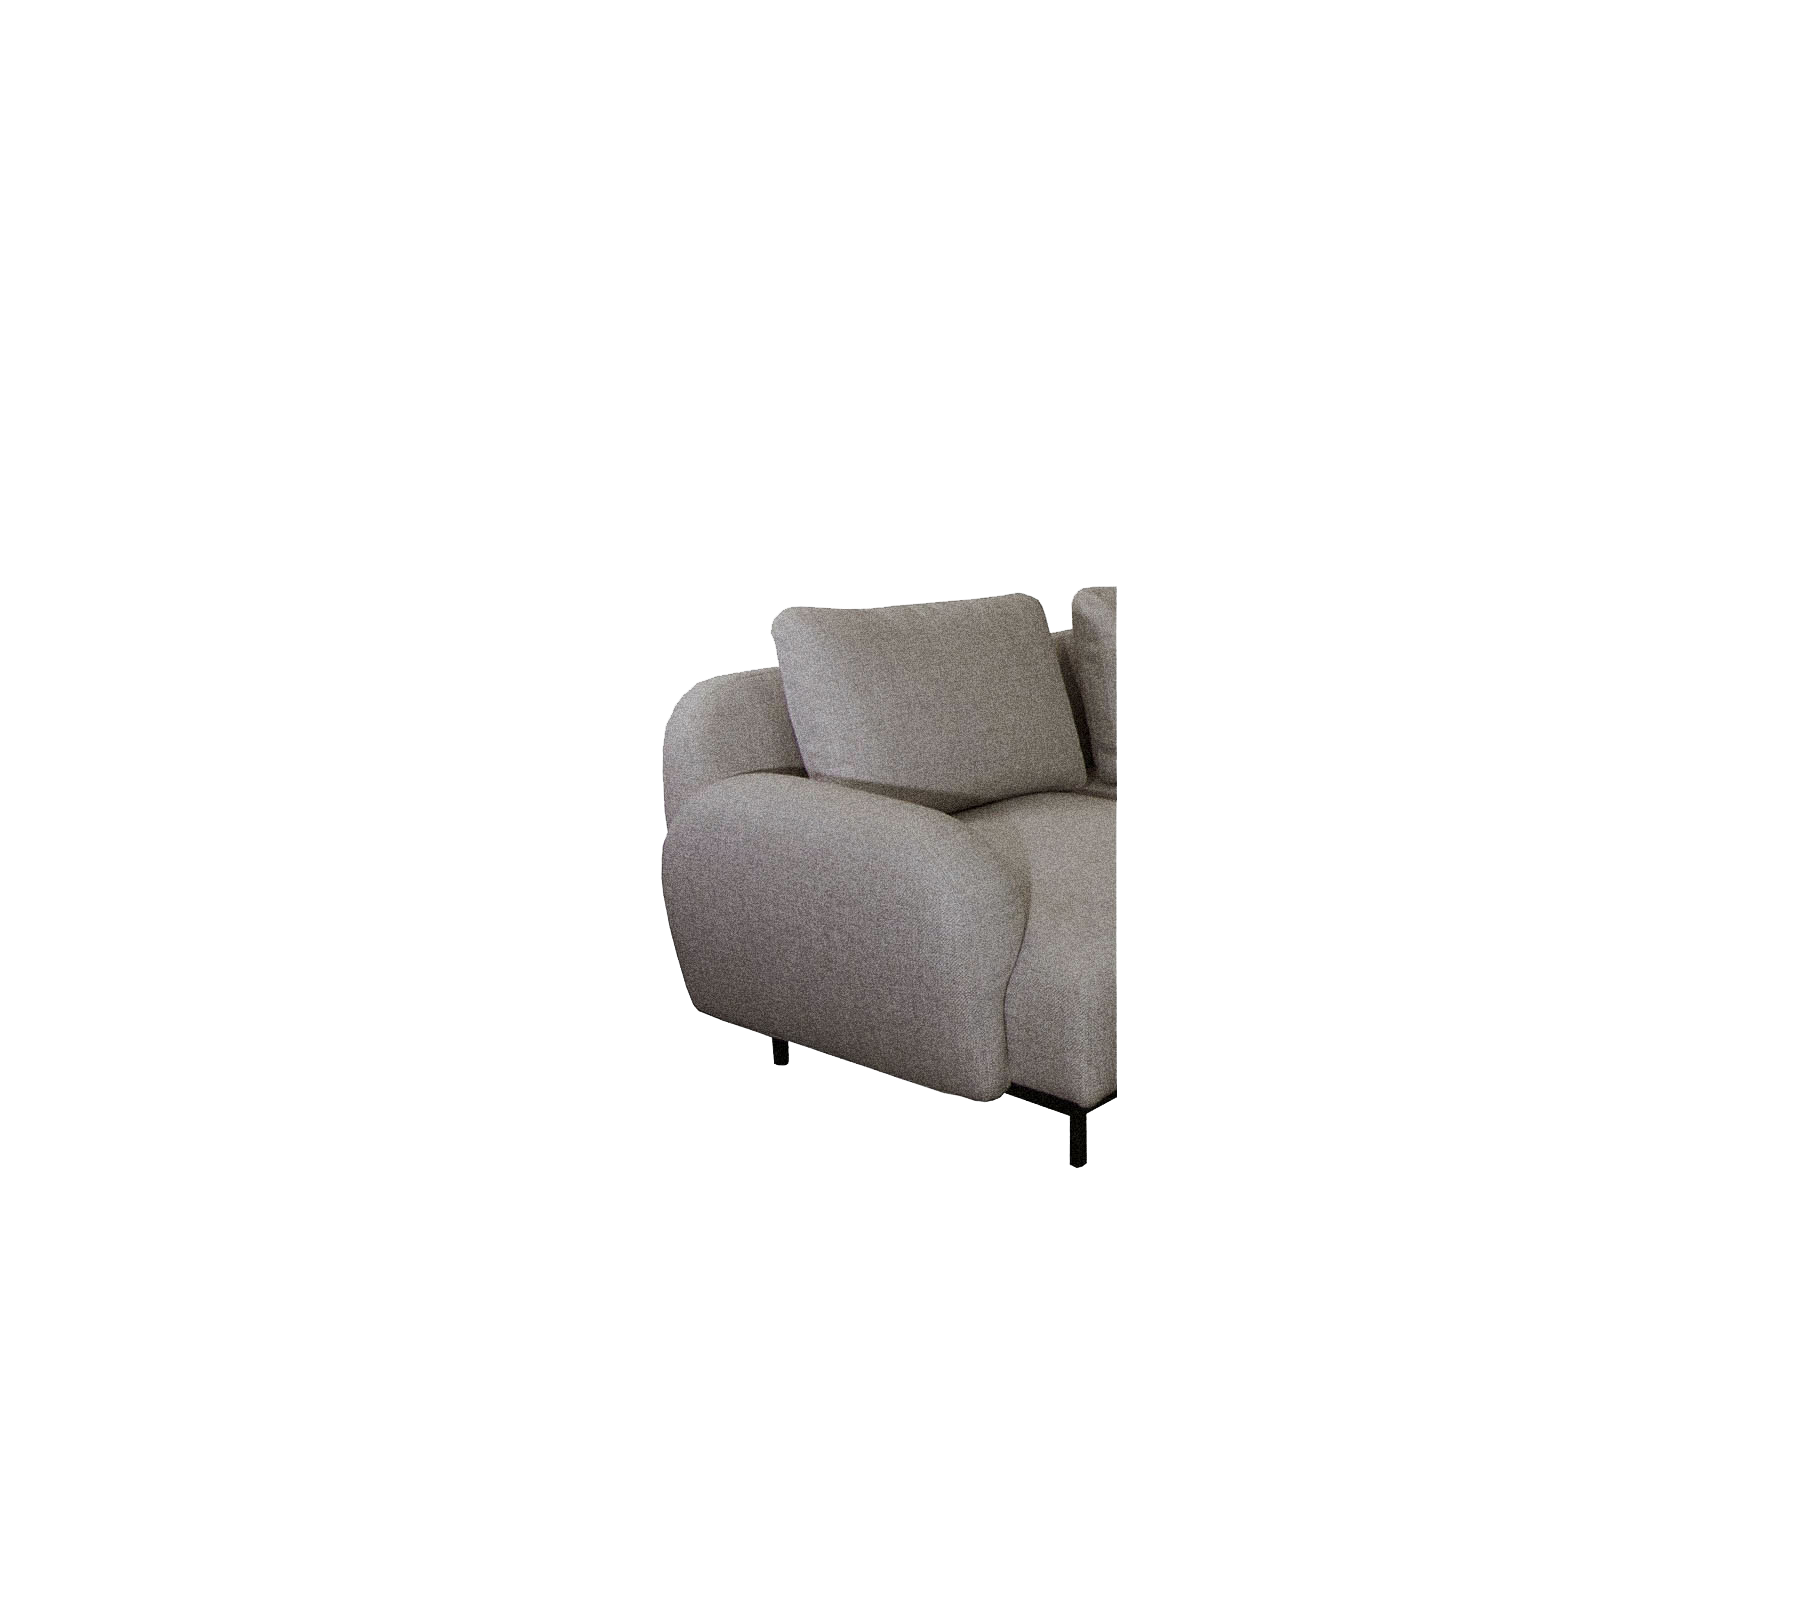 Aura low armrest, Cane-line Zen